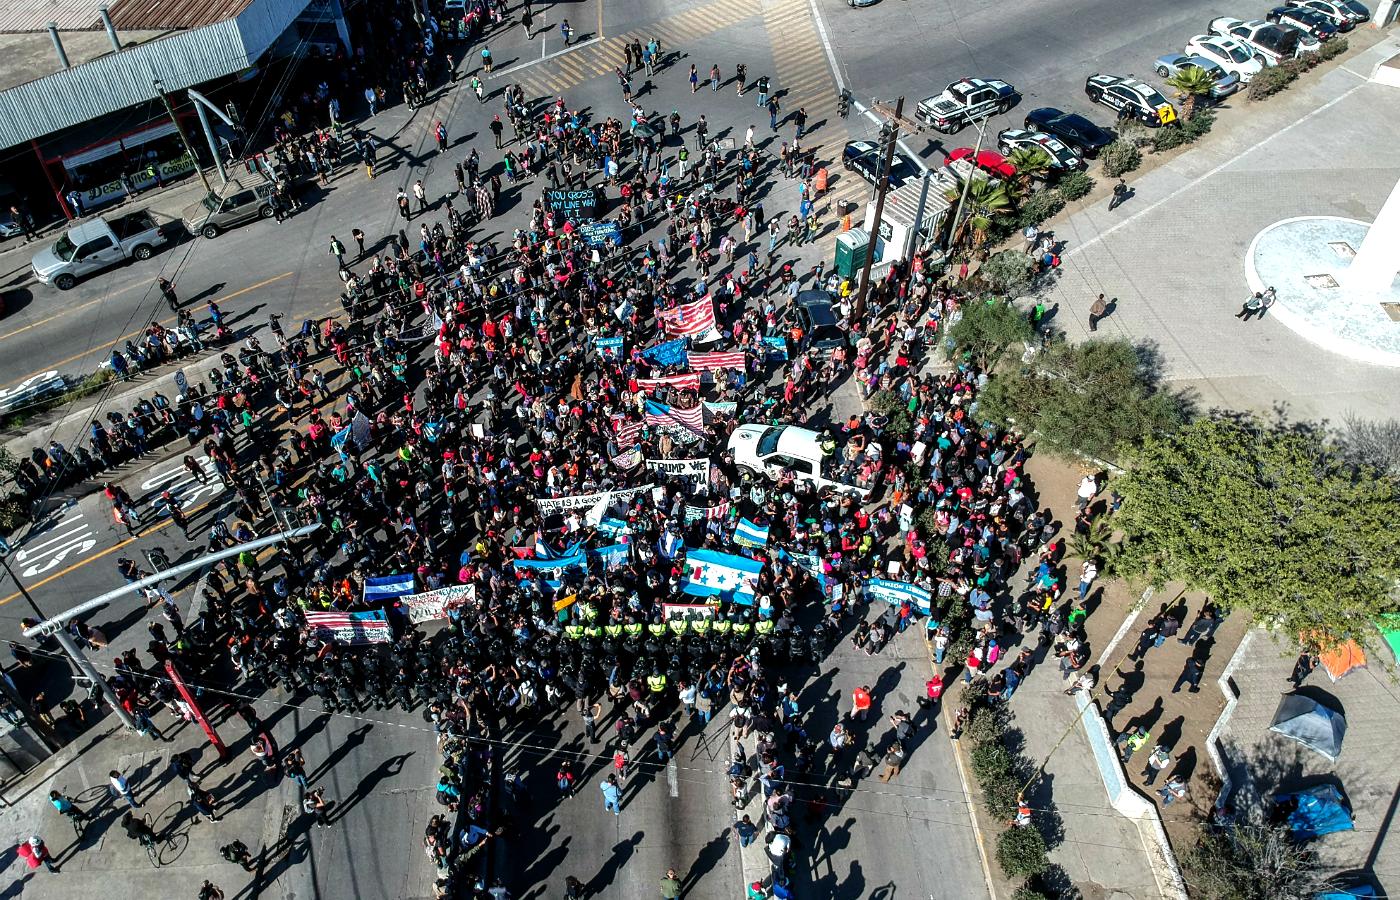 W Tijuanie ponad 5 tys. migrantów zorganizowało demonstrację przeciwko polityce imigracyjnej Stanów Zjednoczonych.